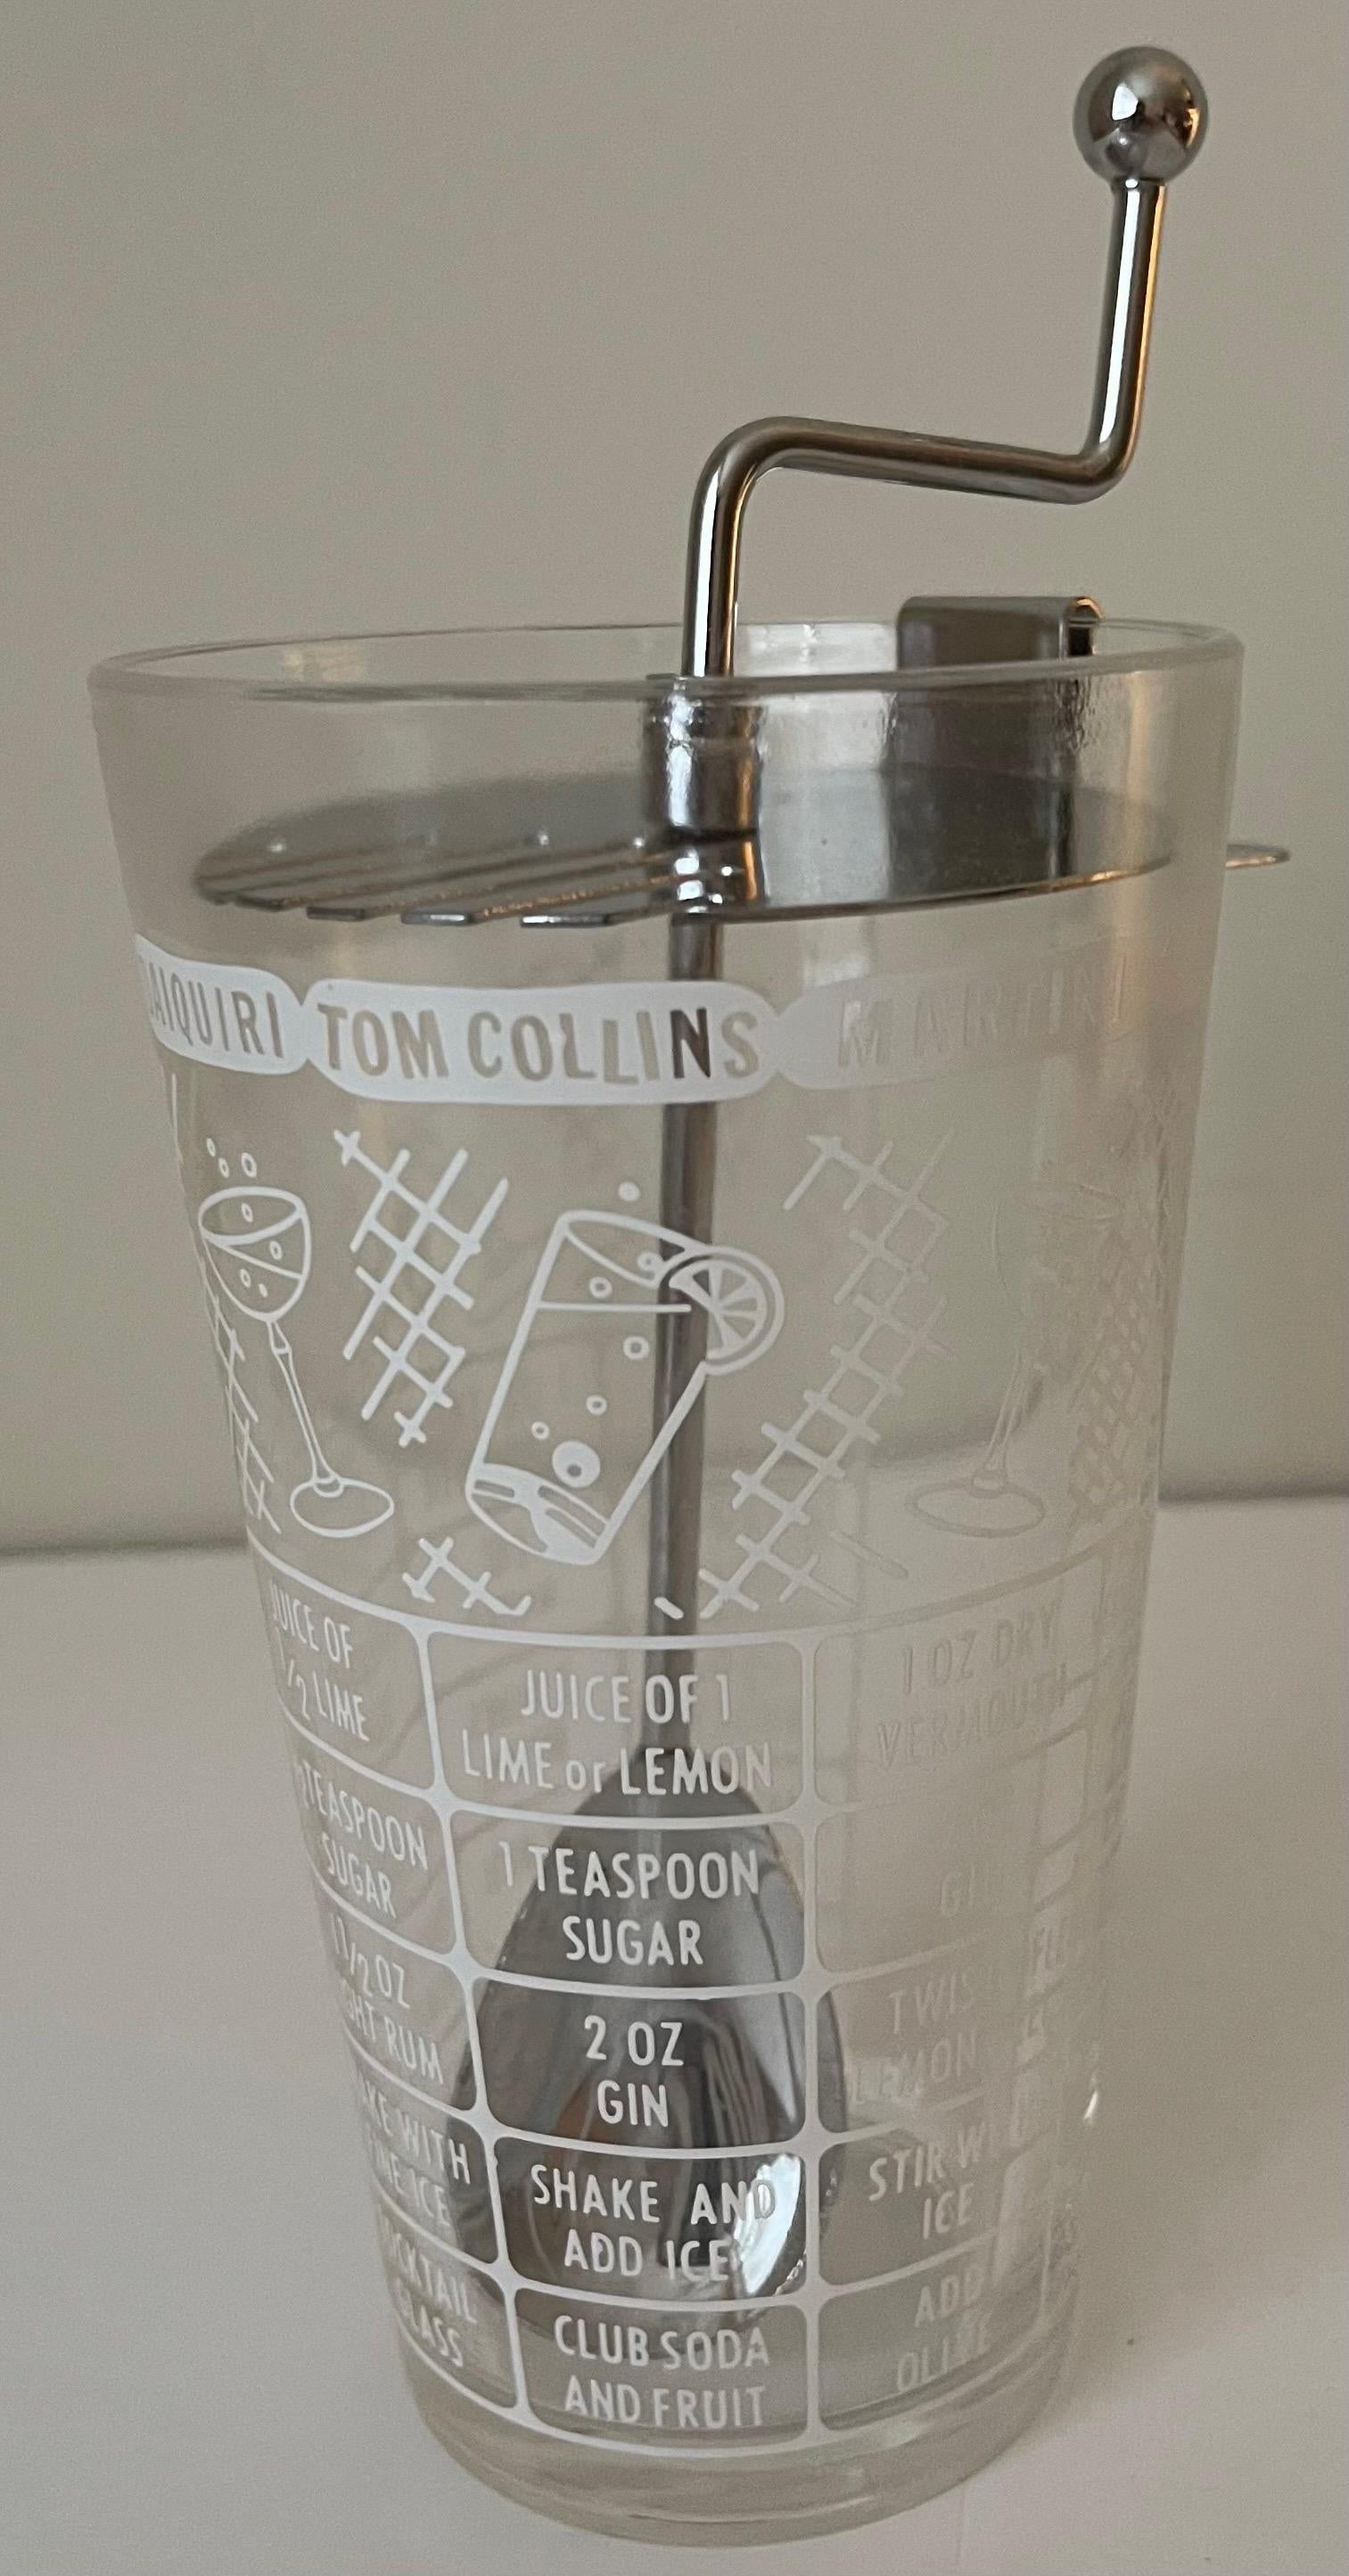 Shaker de style rétro des années 1950. Couvercle en métal avec cuillère attachée. Le verre présente diverses recettes de cocktails rétro.